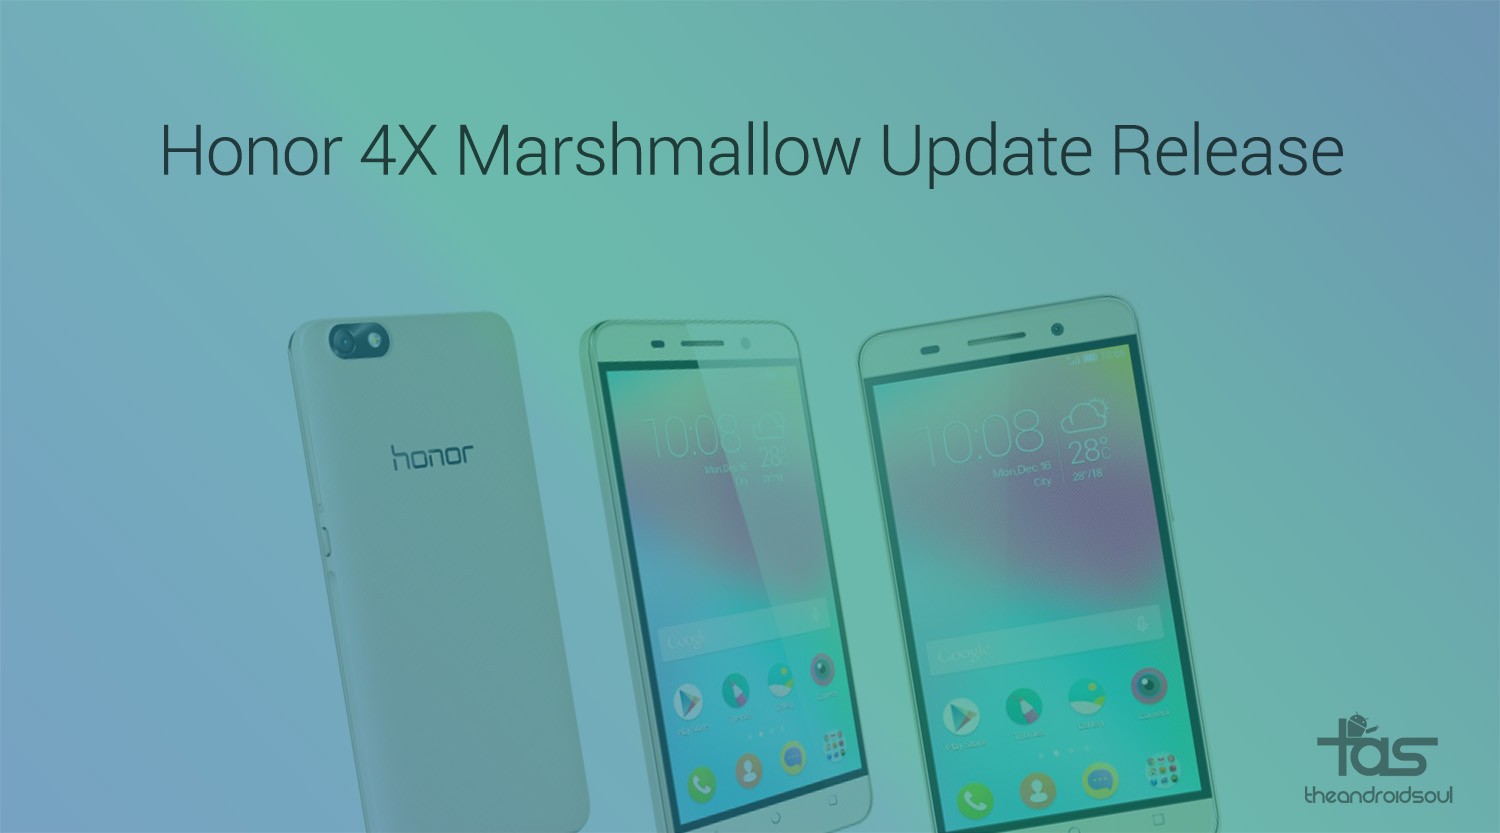 Detalles de lanzamiento de la actualización de Huawei Honor 4X Marshmallow